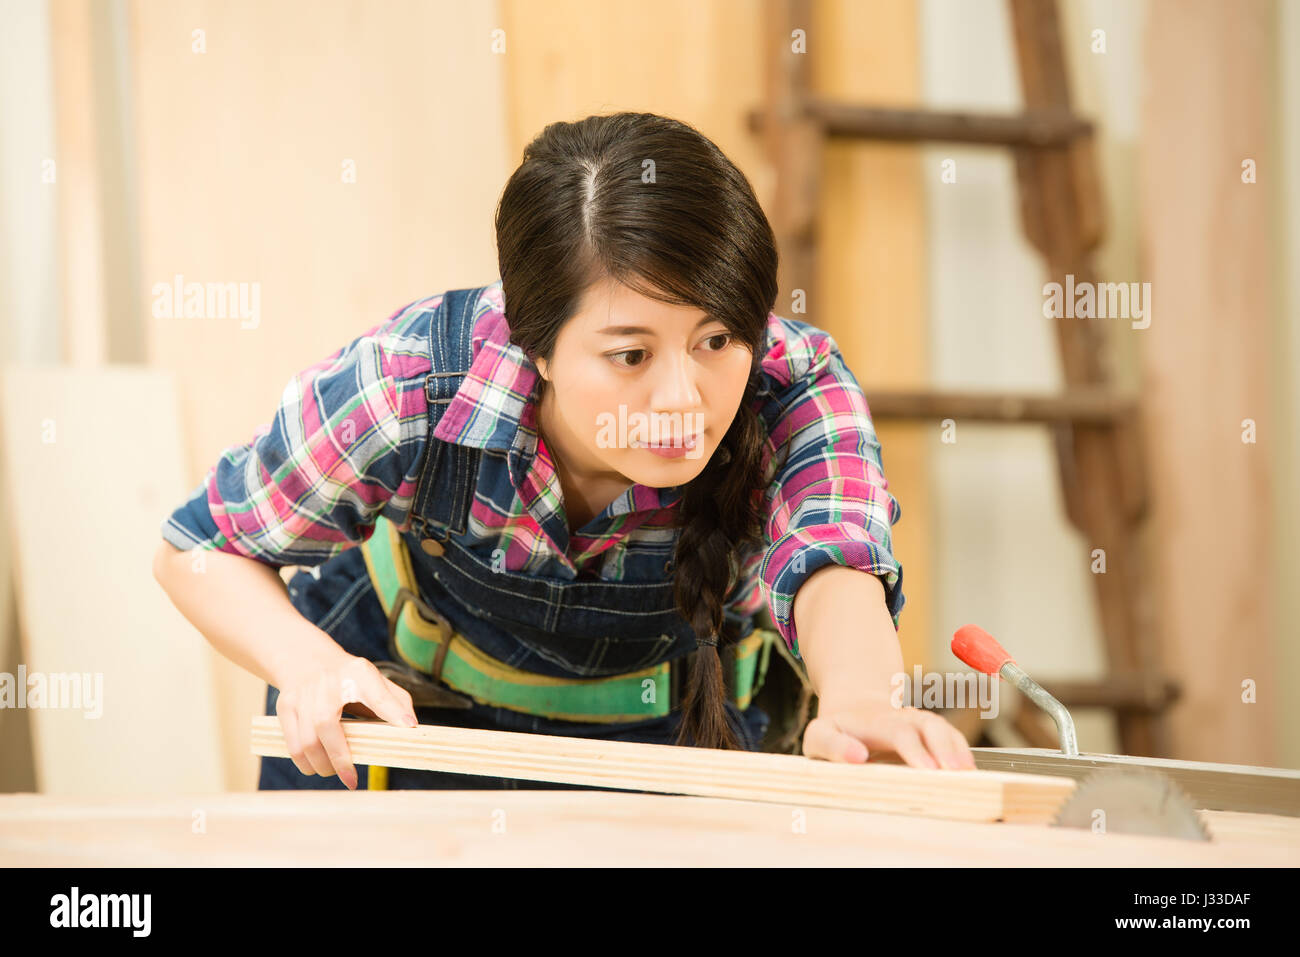 Menuisier de couper un morceau de bois dans son atelier de menuiserie, à l'aide d'une scie circulaire. race mixte modèle chinois asiatique. Banque D'Images